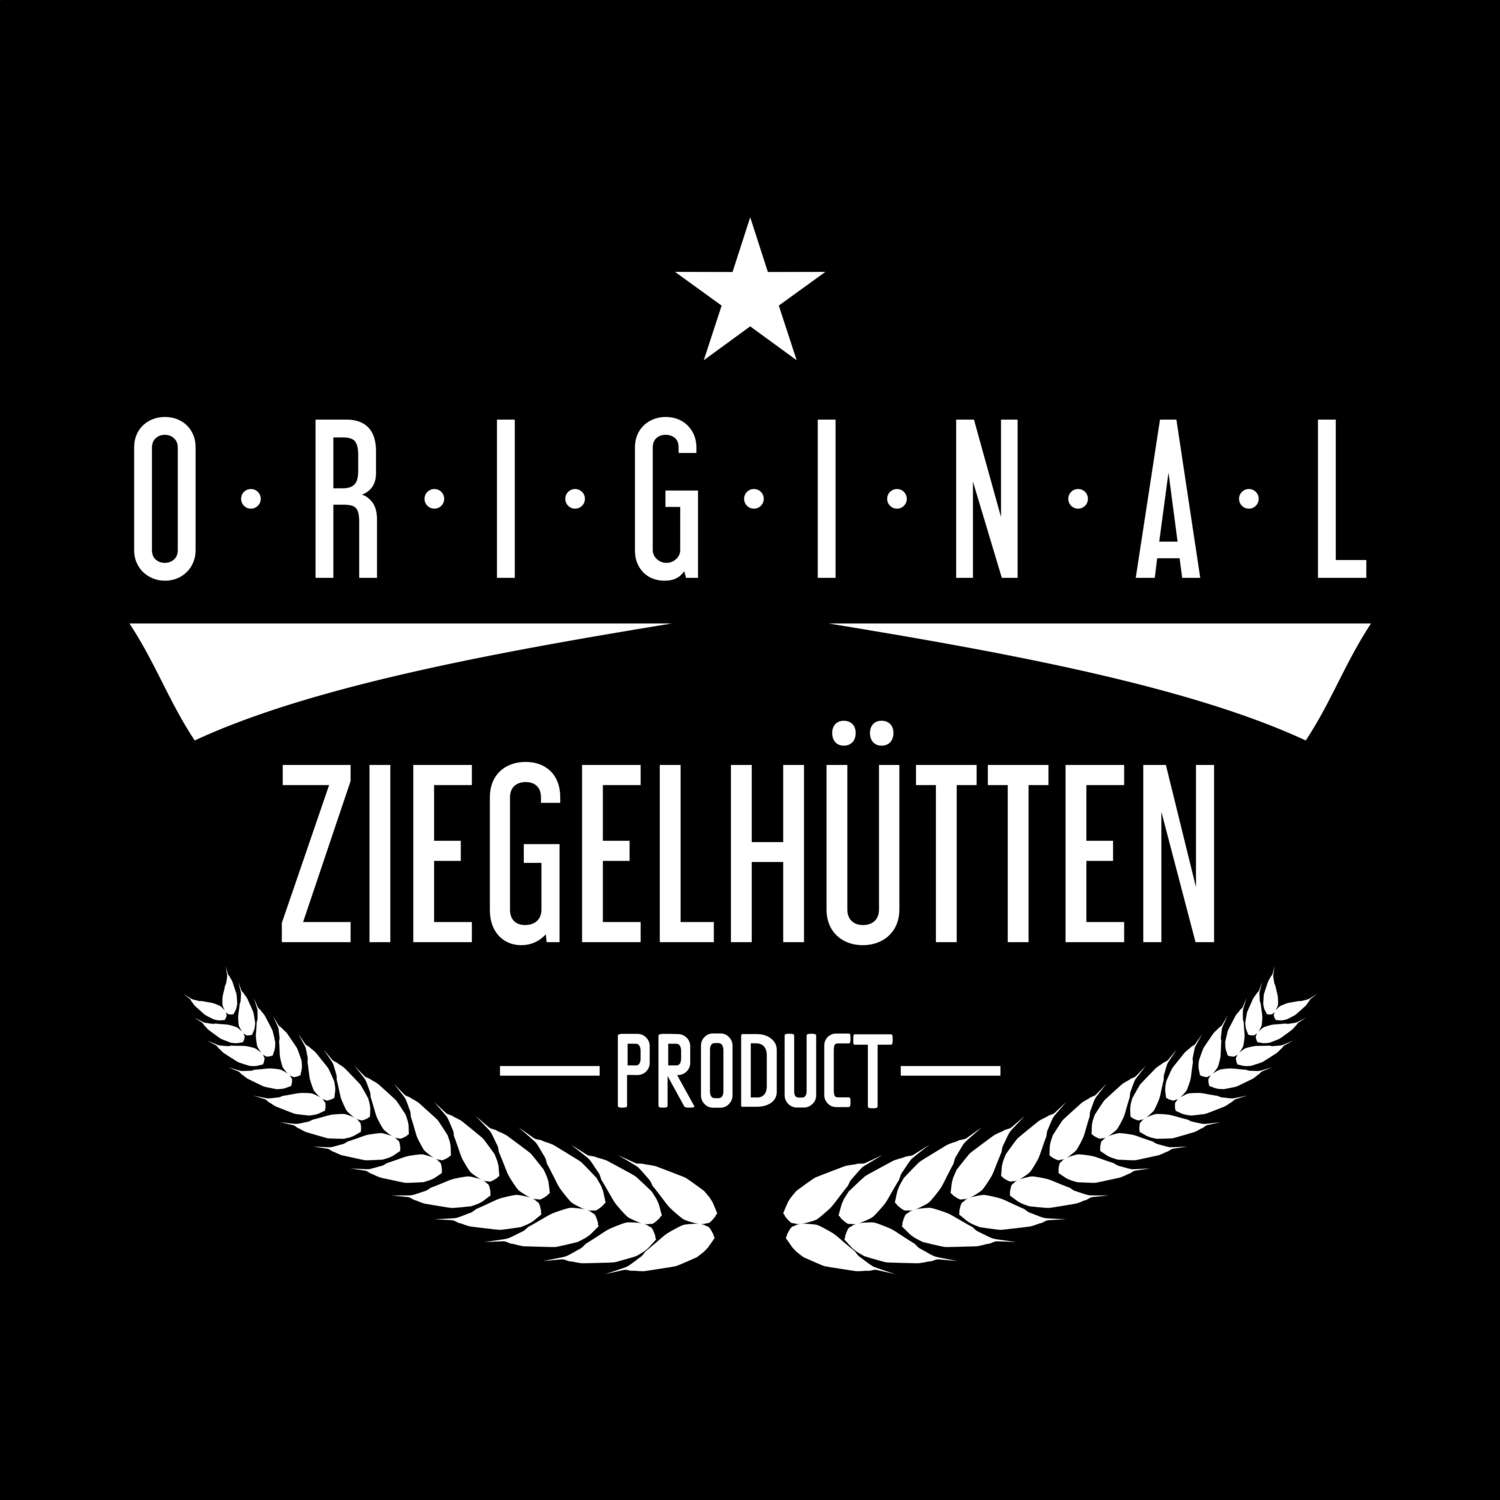 Ziegelhütten T-Shirt »Original Product«